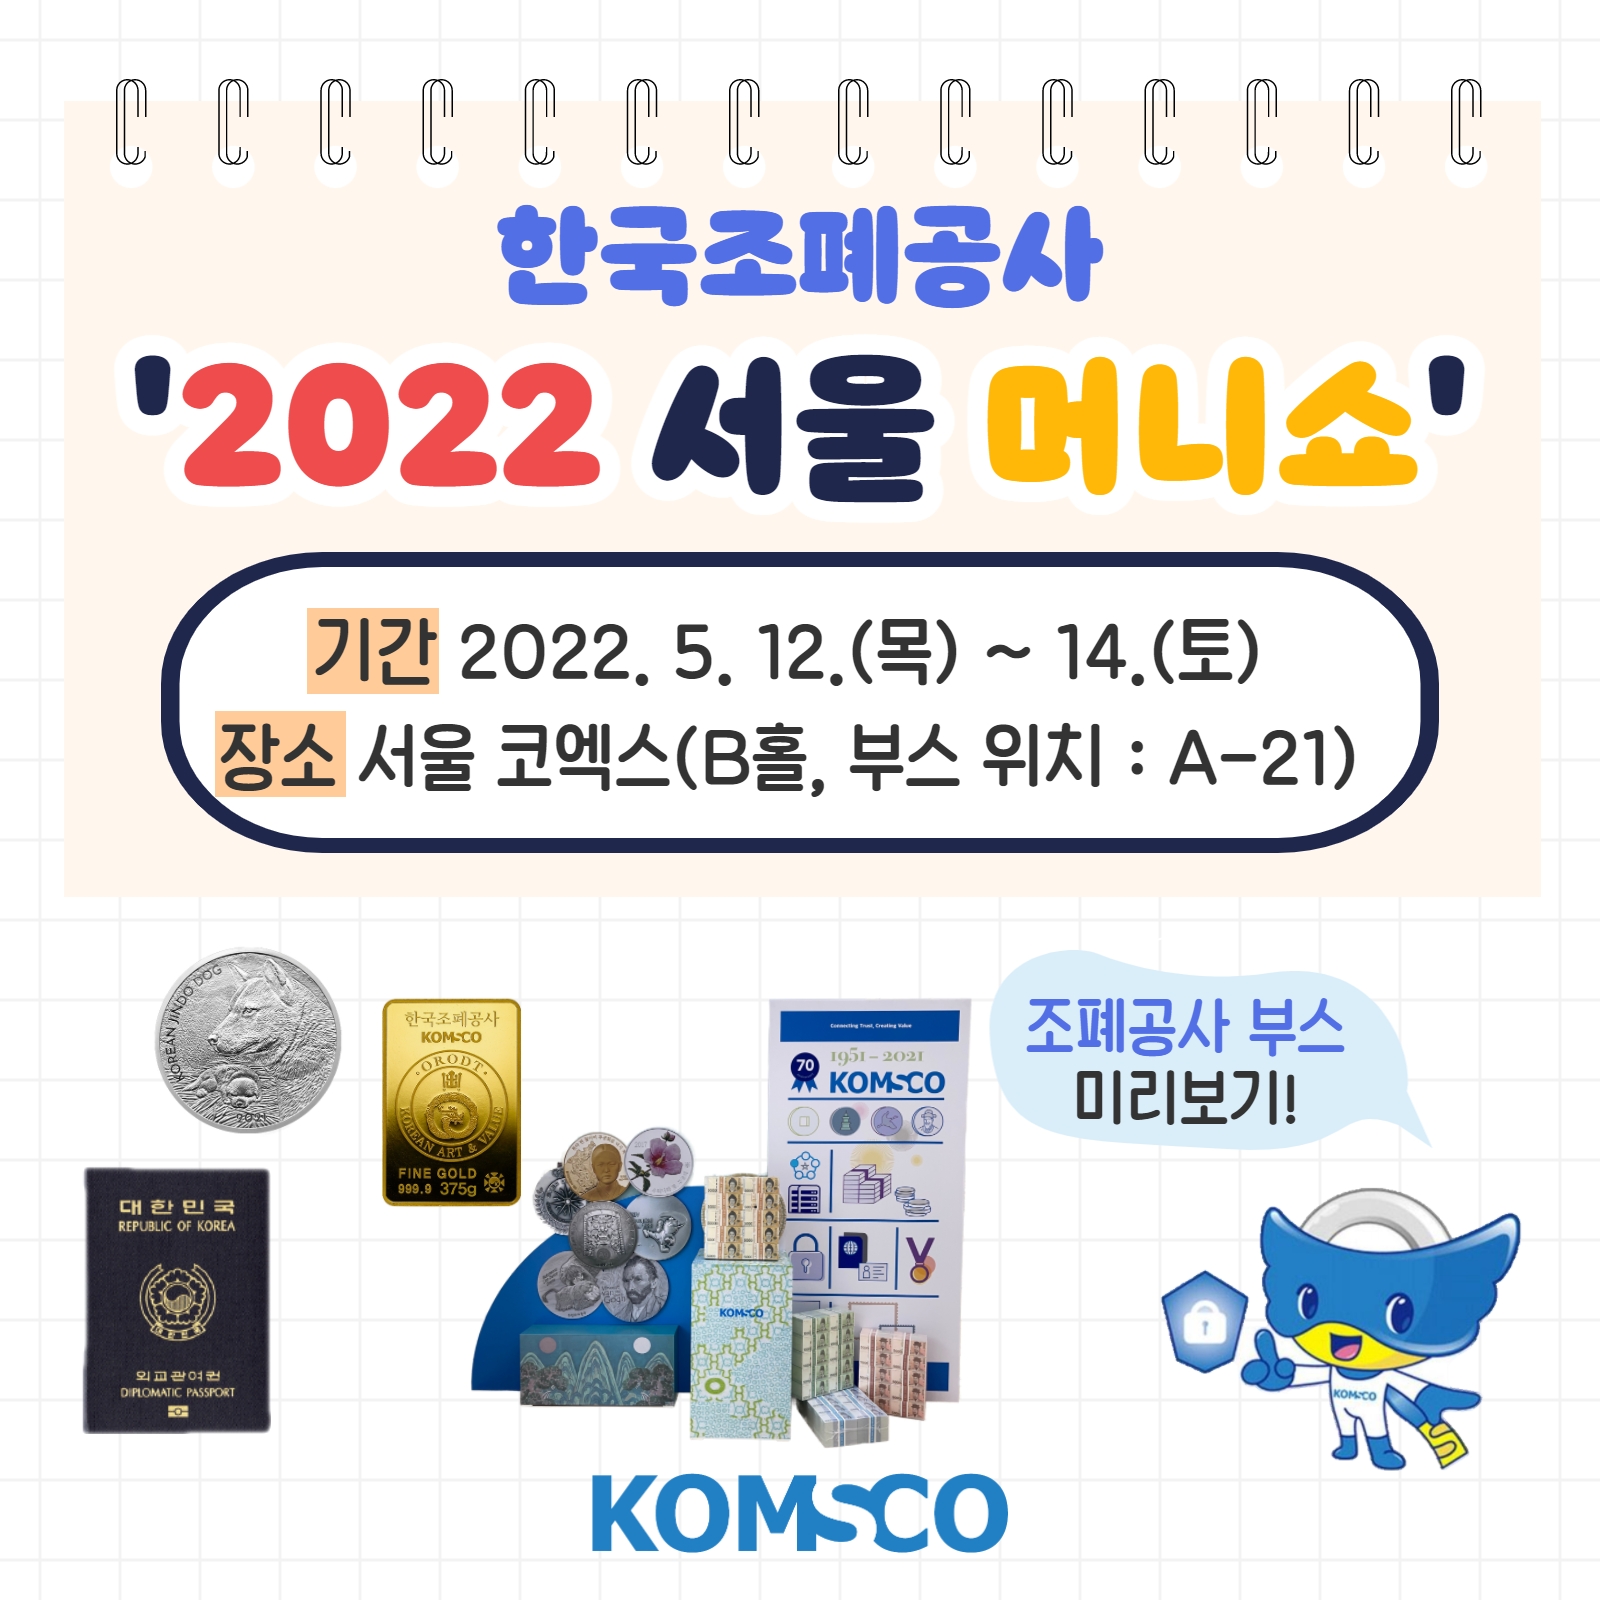 한국조폐공사 '2022 서울 머니쇼' - 기간 2022.5.12.(목) ~ 14.(토) - 장소 : 서울 코엑스(B홀, 부스 위치 :  A-21)